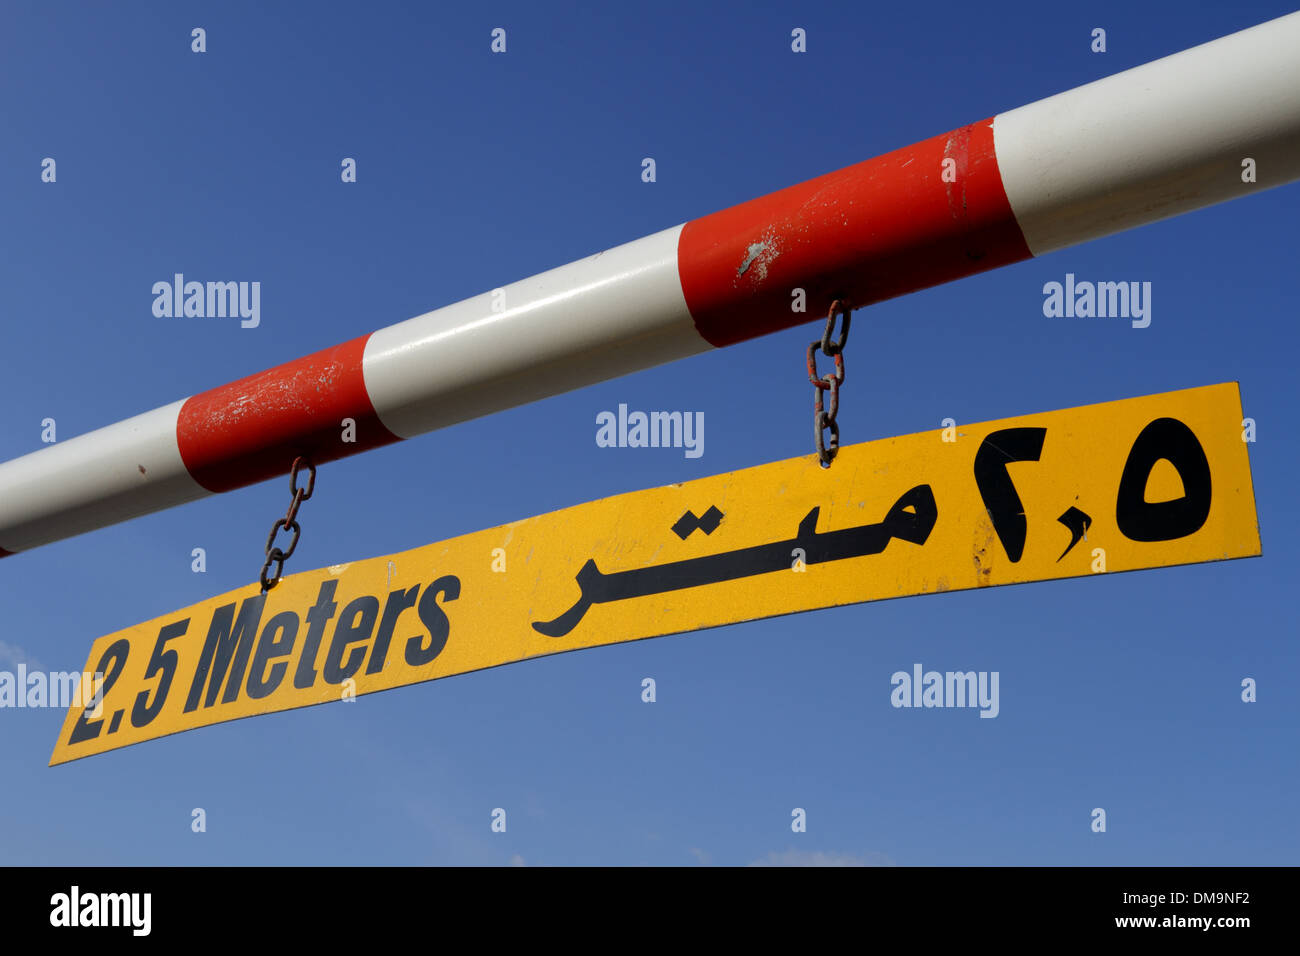 Altura máxima señal de advertencia en inglés y árabe contra un cielo azul, el Reino de Bahrein Foto de stock